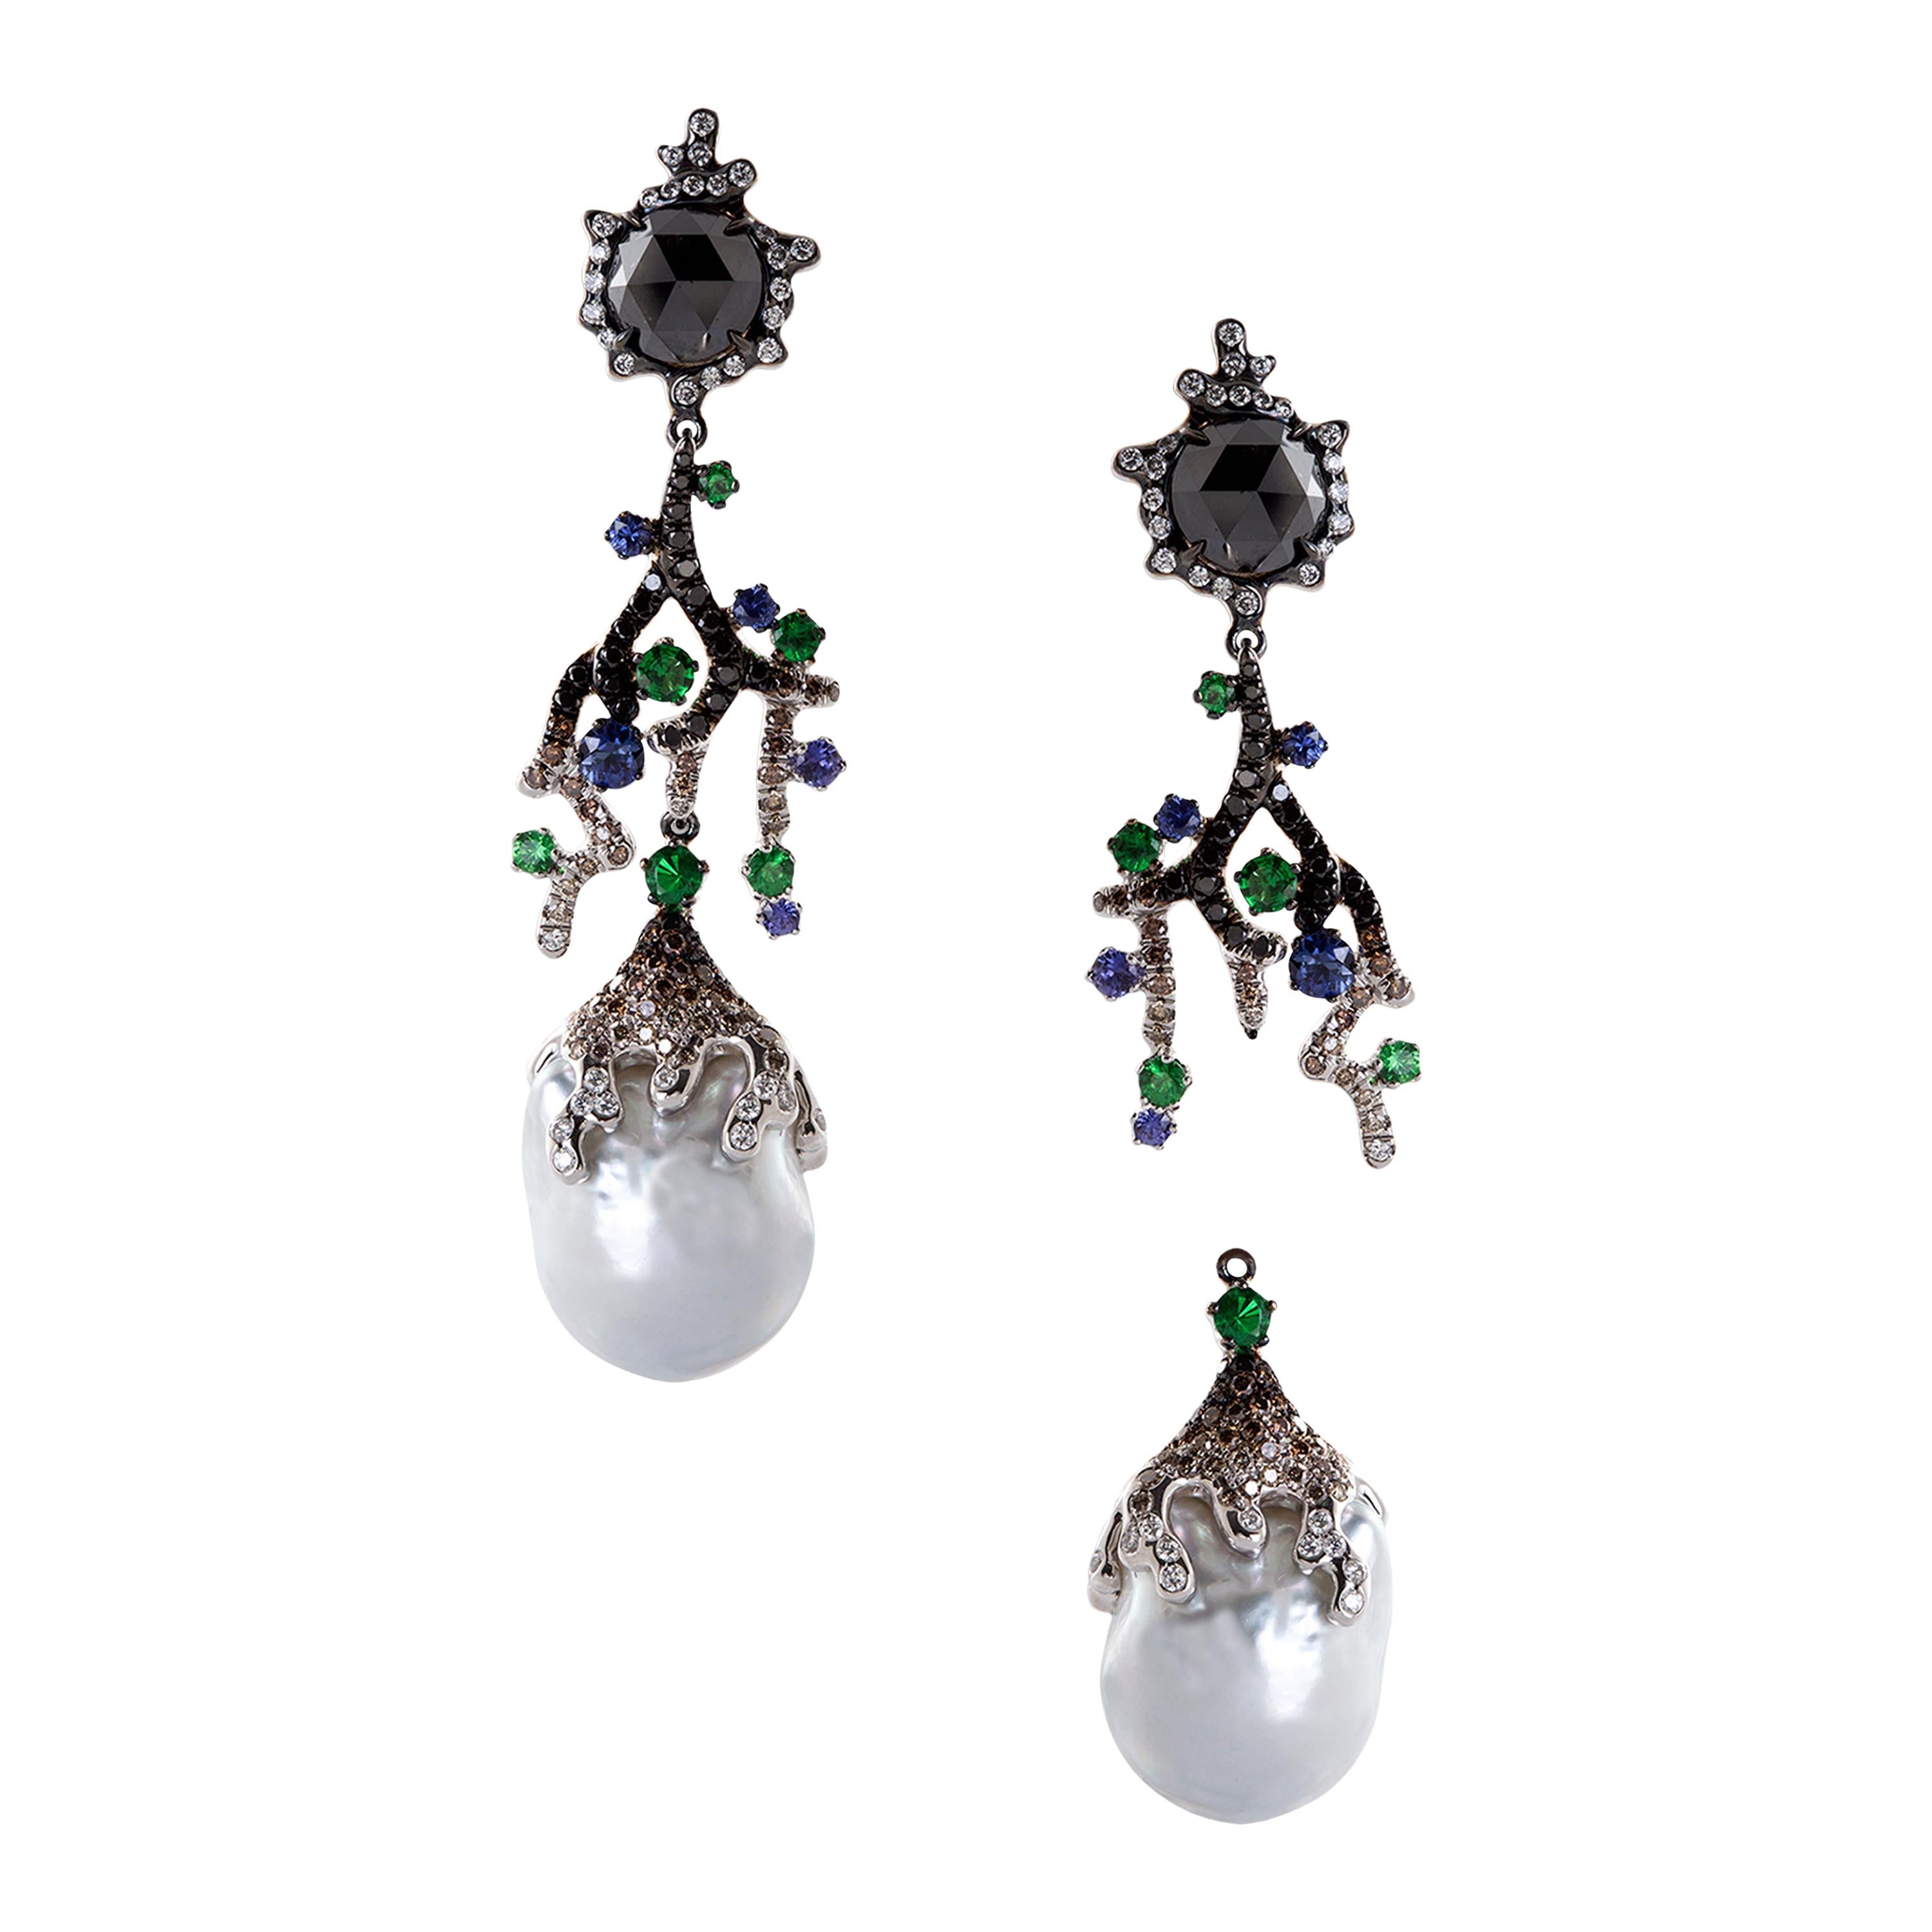 Boucles d'oreilles en or blanc 18 carats, diamants, saphirs violets, tsavorites et perles baroques